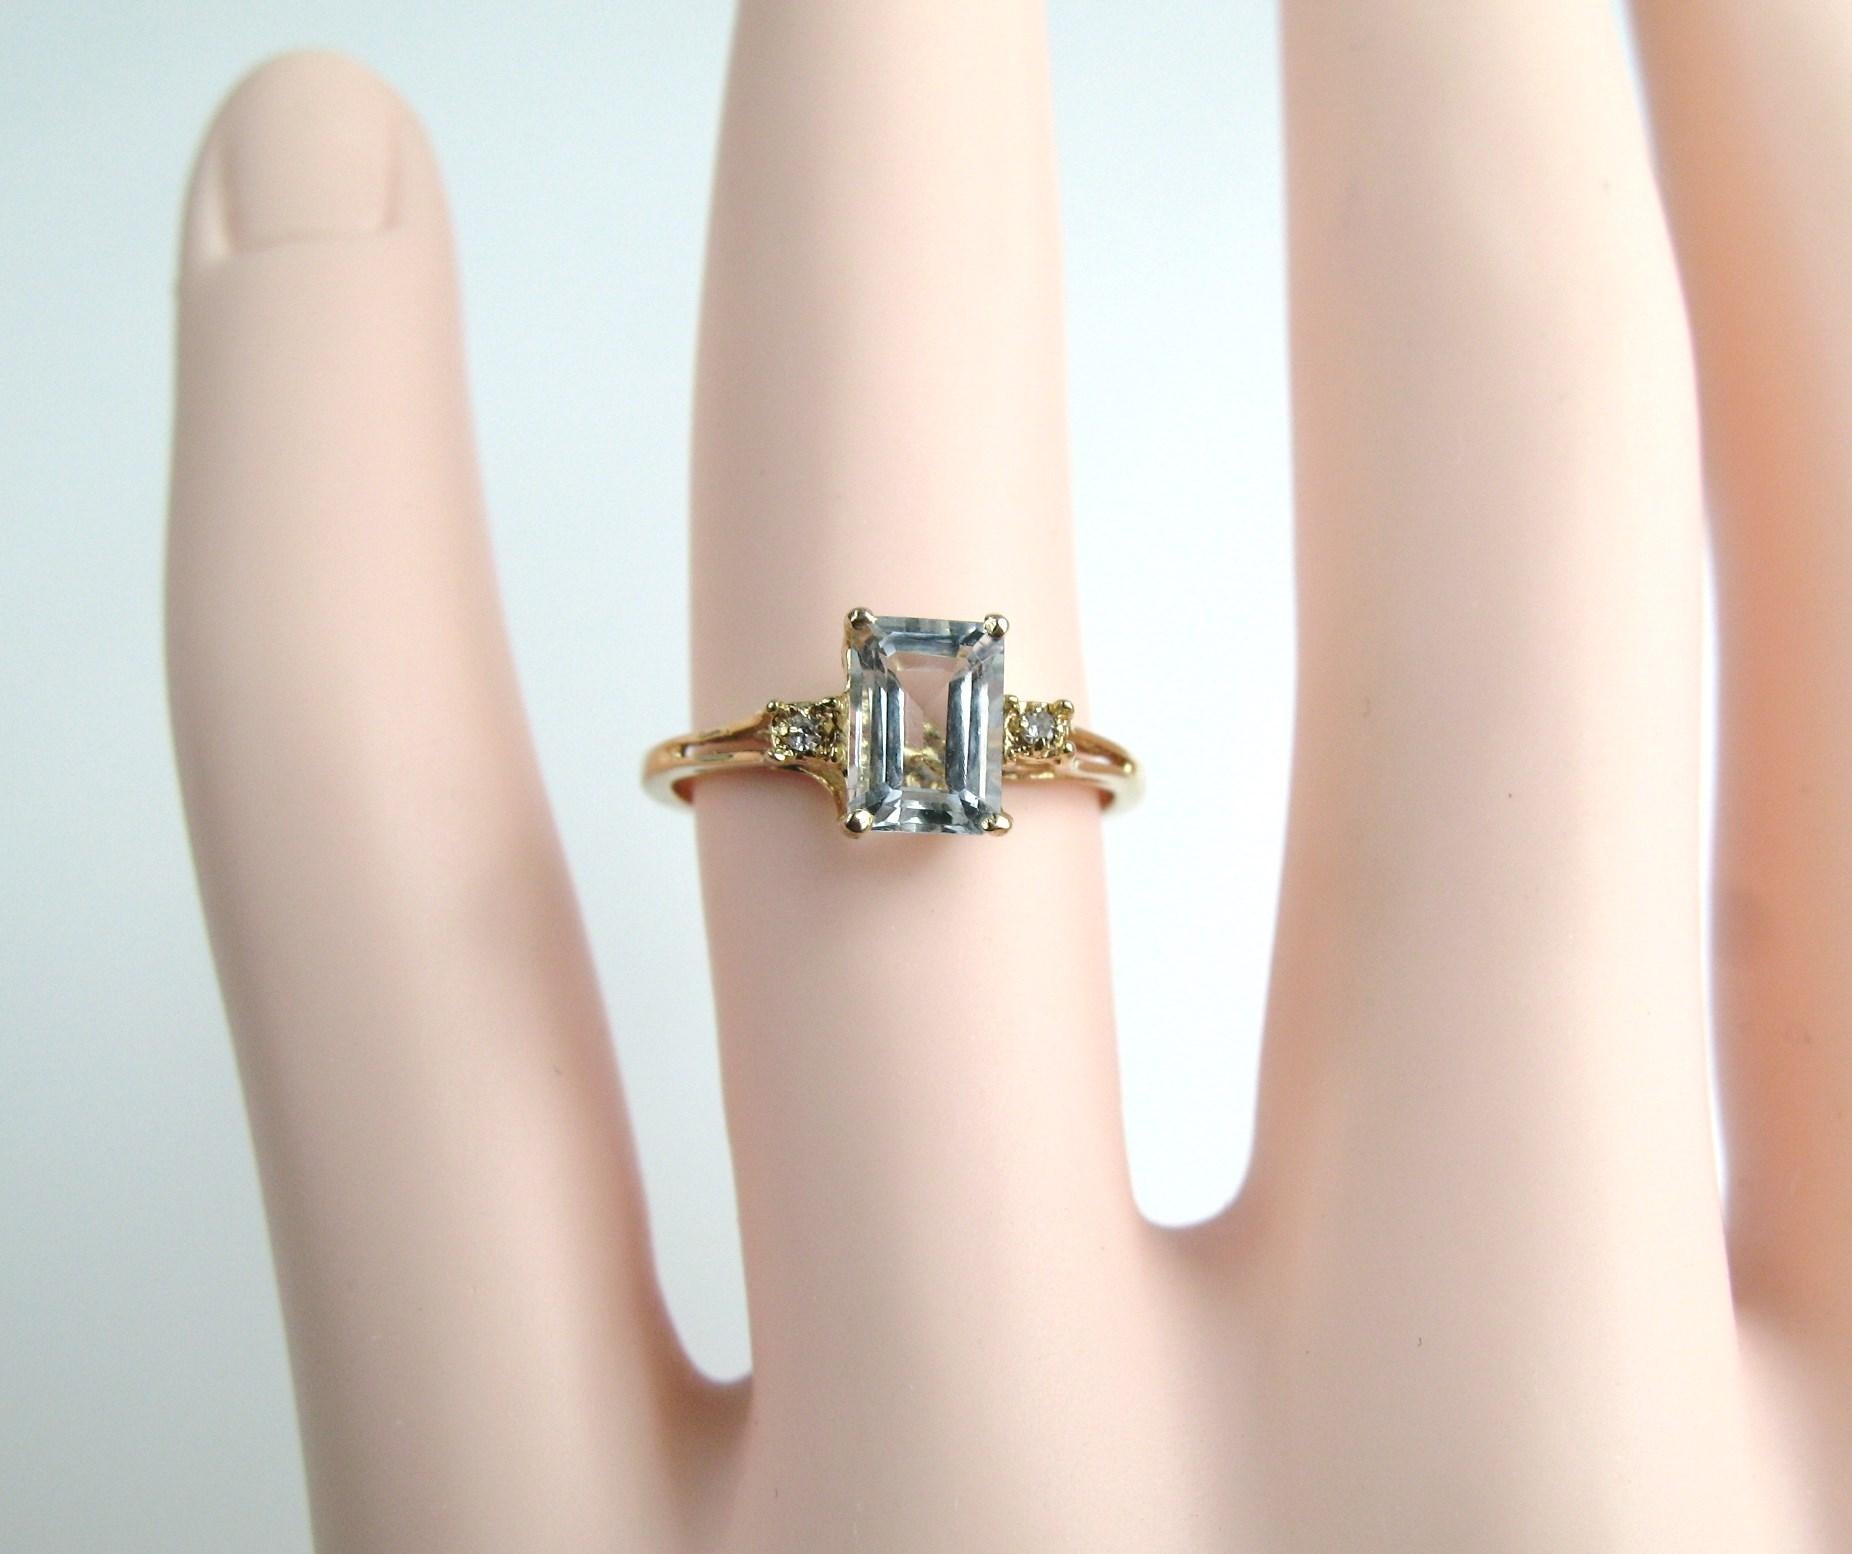 Moderner Ring mit Aquamarin und Diamant. Aquamarin in Zackenfassung mit Smaragdschliff, flankiert von je 1 Diamant auf jeder Seite. Der Ring hat die Größe A 6 und kann von uns oder Ihrem Juwelier angepasst werden. In unserem Shop finden Sie weitere